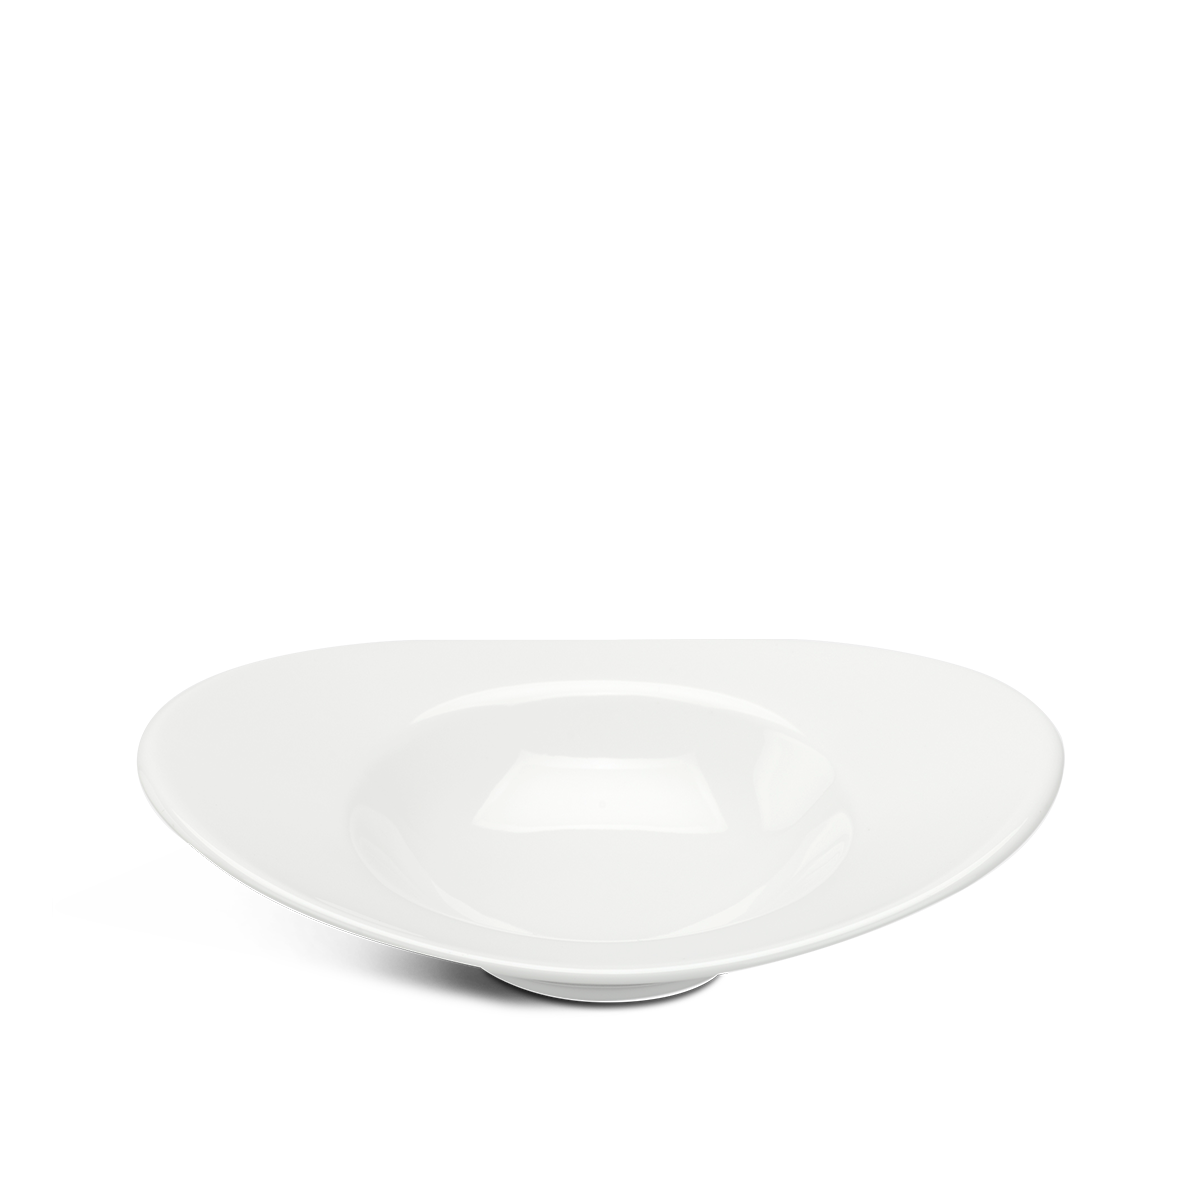 Chén oval vành 17 cm - Misc Assortment Ly's - Trắng Ngà